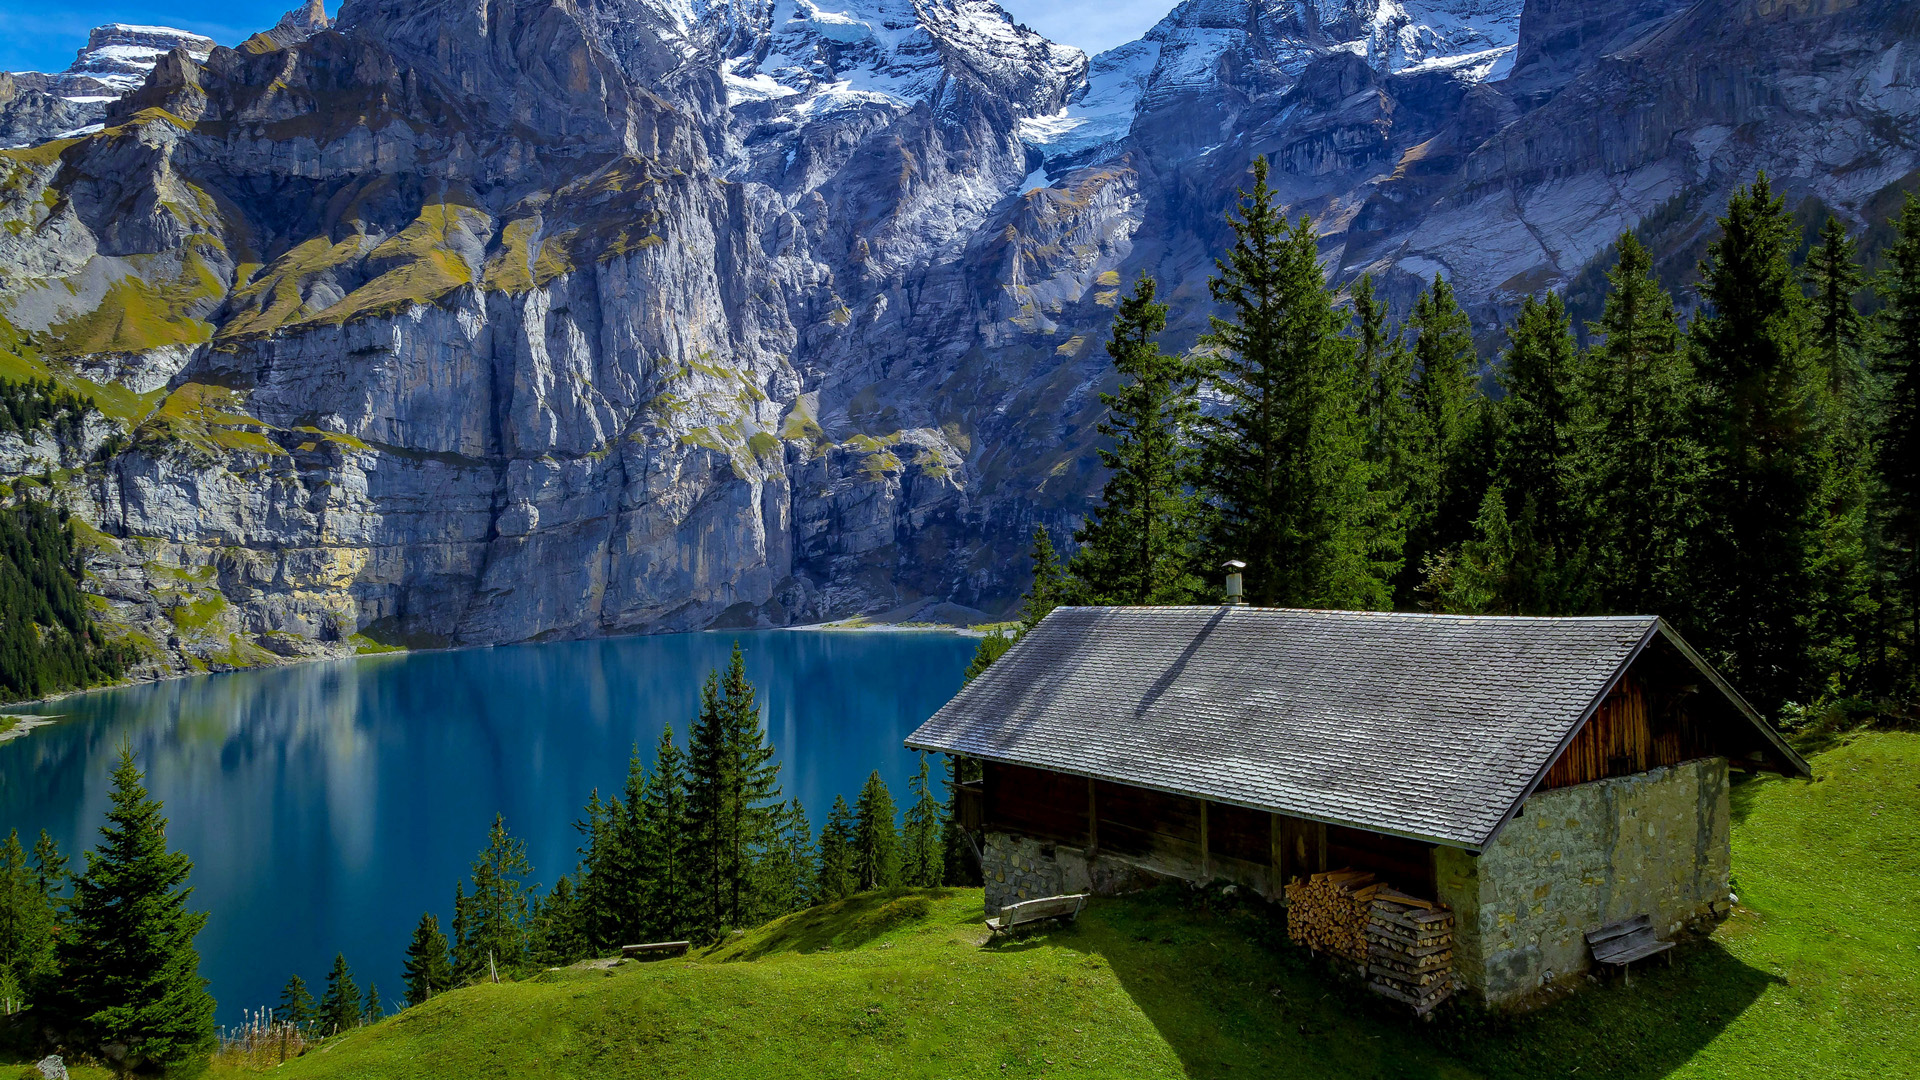 瑞士 森林 山脉 岩石 湖水 房子 自然风景桌面壁纸 风景壁纸 壁纸下载 彼岸桌面